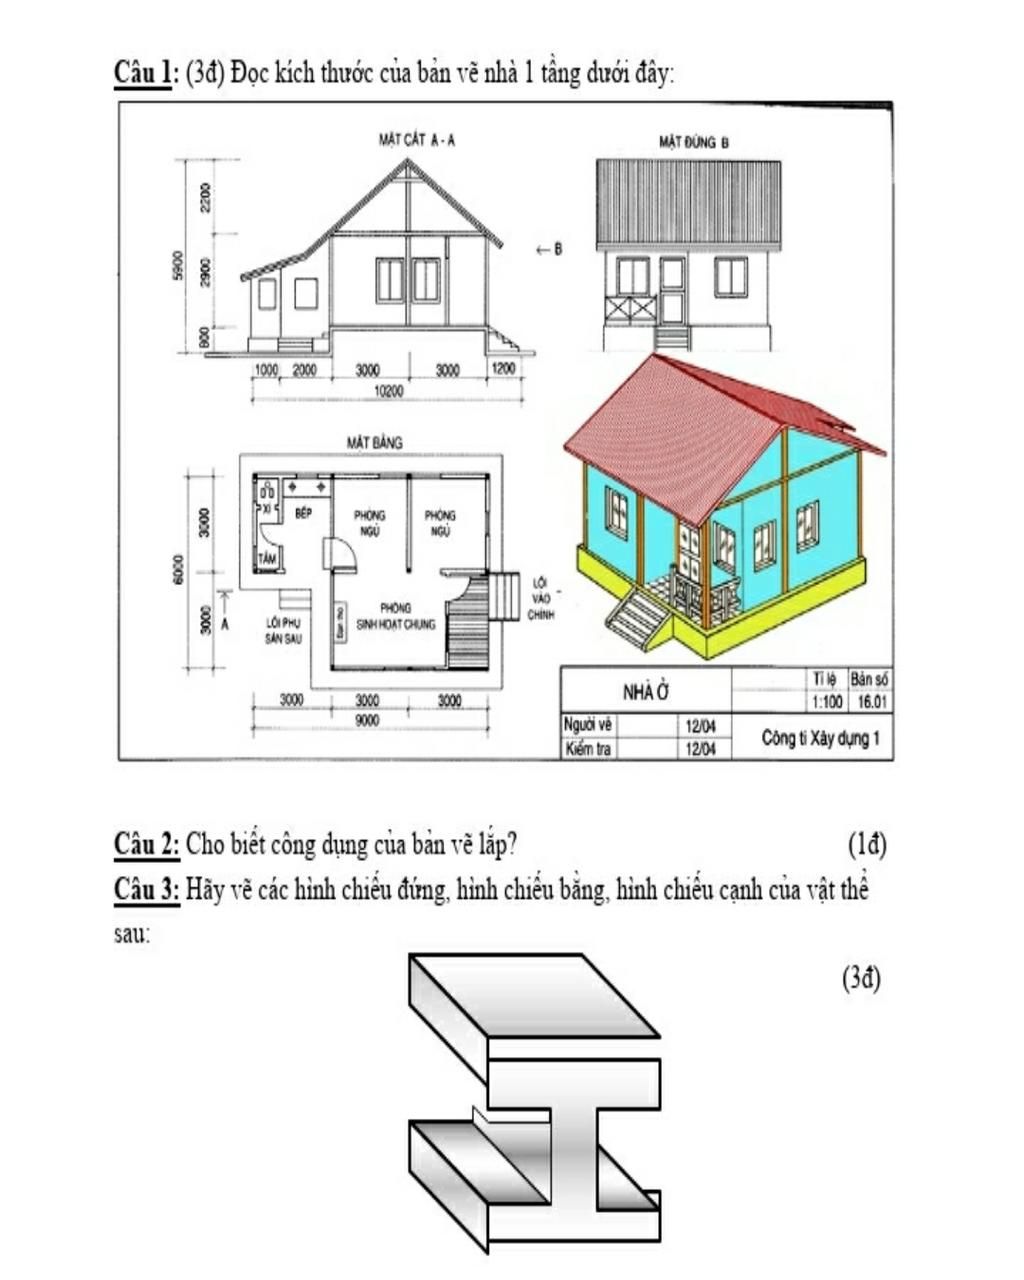 Bạn đang có kế hoạch xây nhà 1 tầng và đang tìm kiếm ý tưởng cho bản vẽ? Hãy xem qua hình ảnh liên quan đến từ khóa \